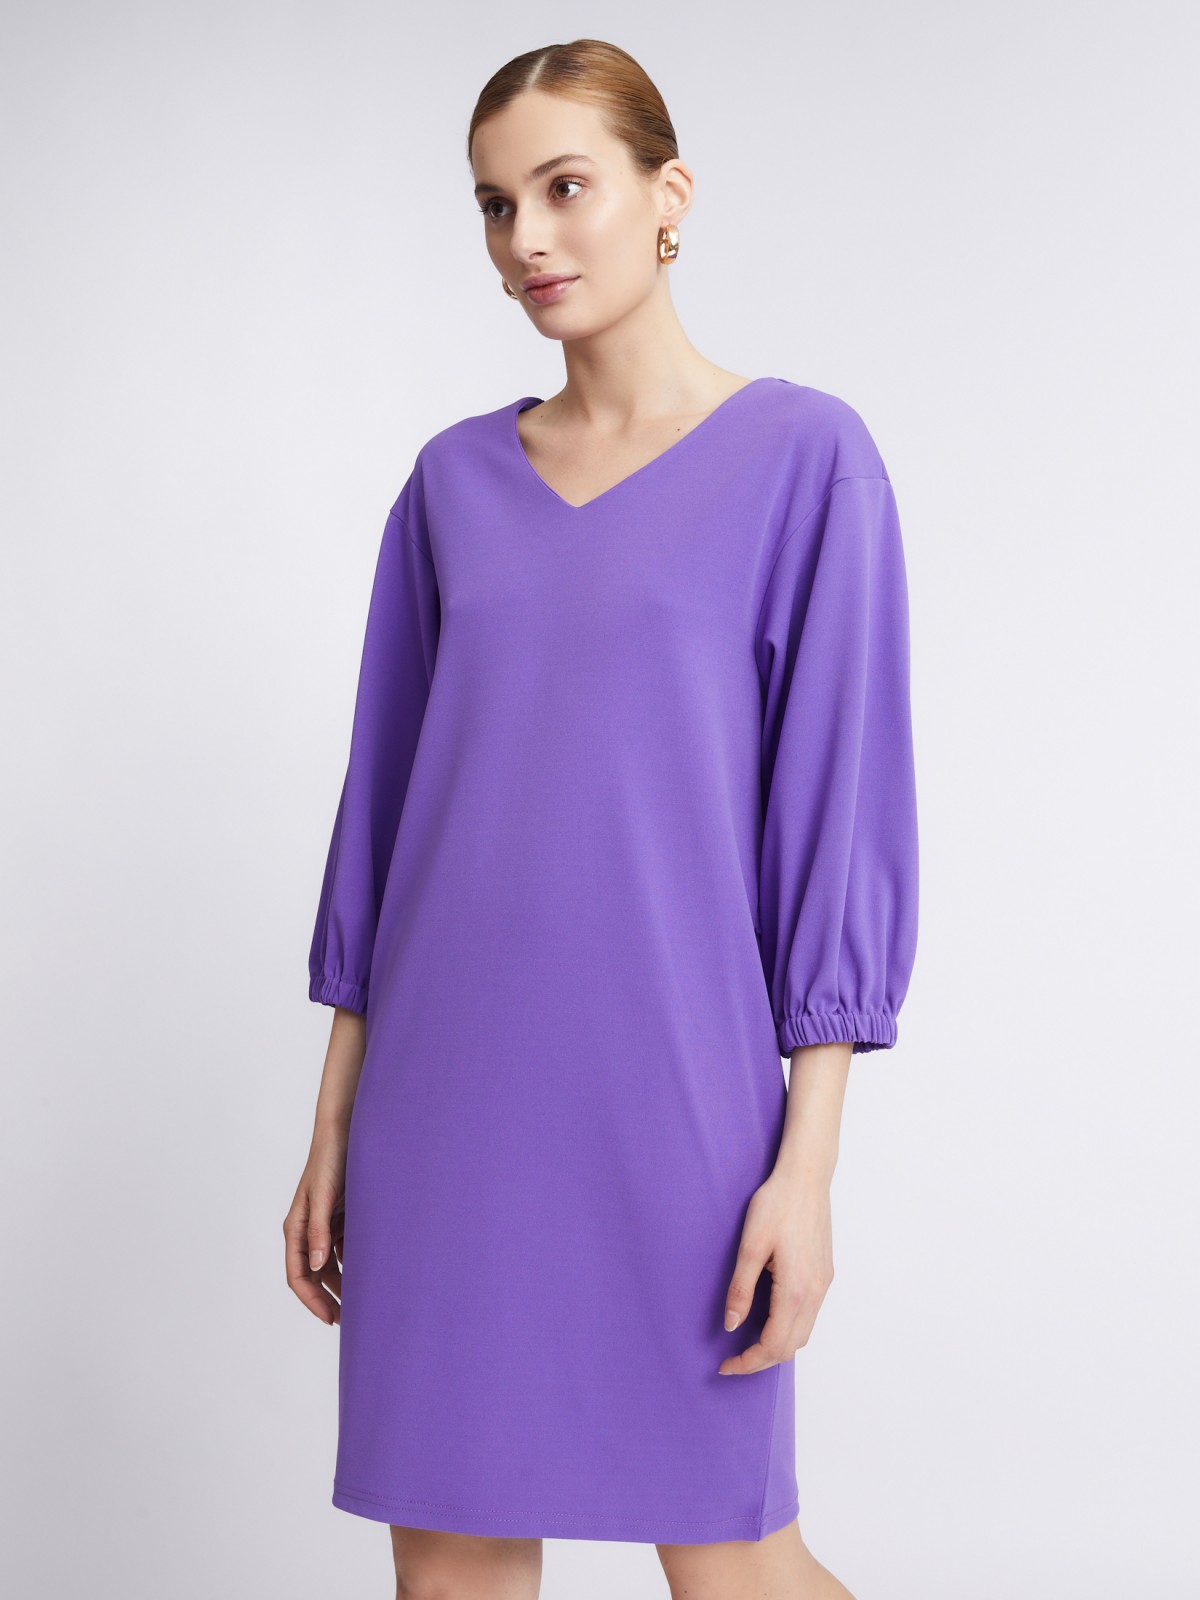 Платье с объёмными рукавами и поясом zolla 22331819F062, цвет сливовый, размер M - фото 5